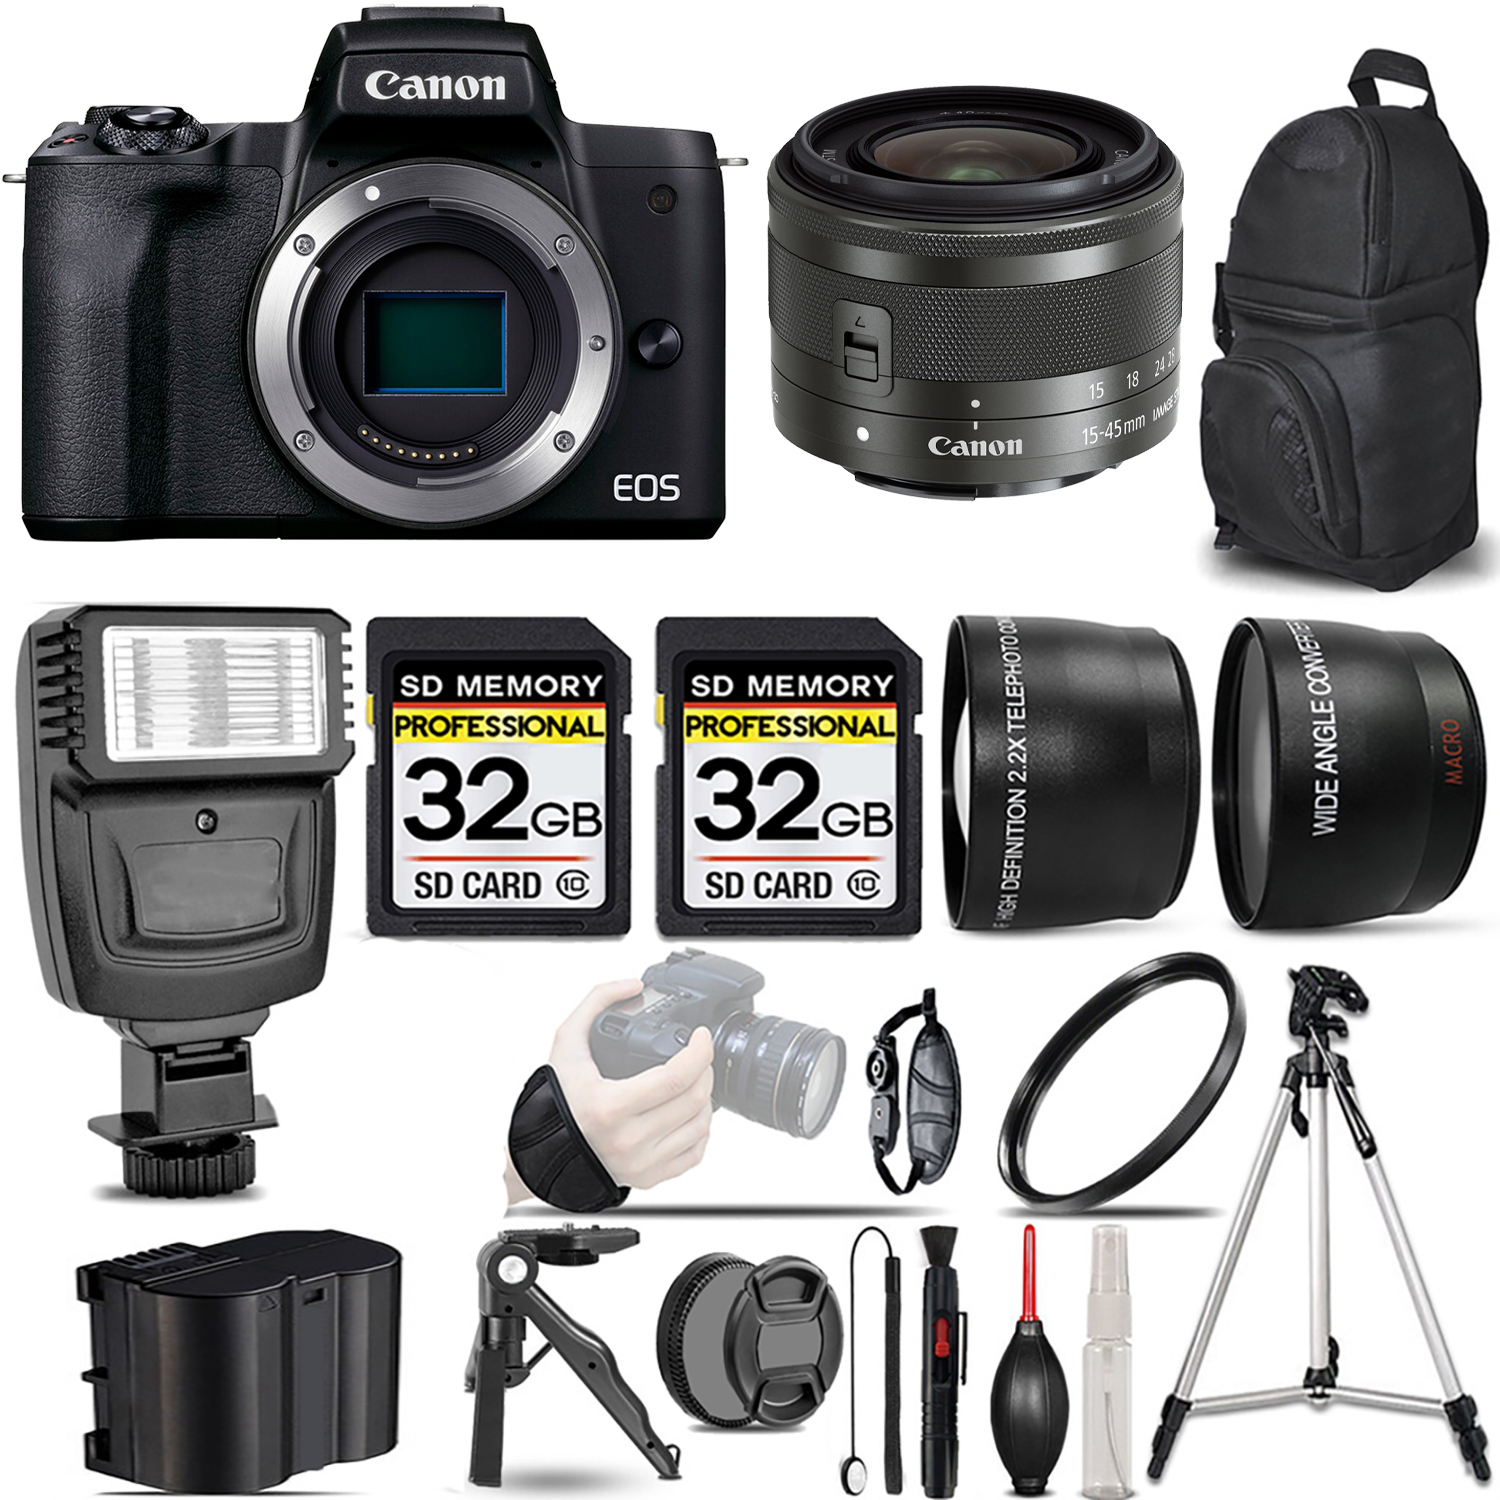 EOS M50 Mark II (Black) + 15-45mm IS STM Lens (Graphite) + Flash + 64GB - Kit *FREE SHIPPING*